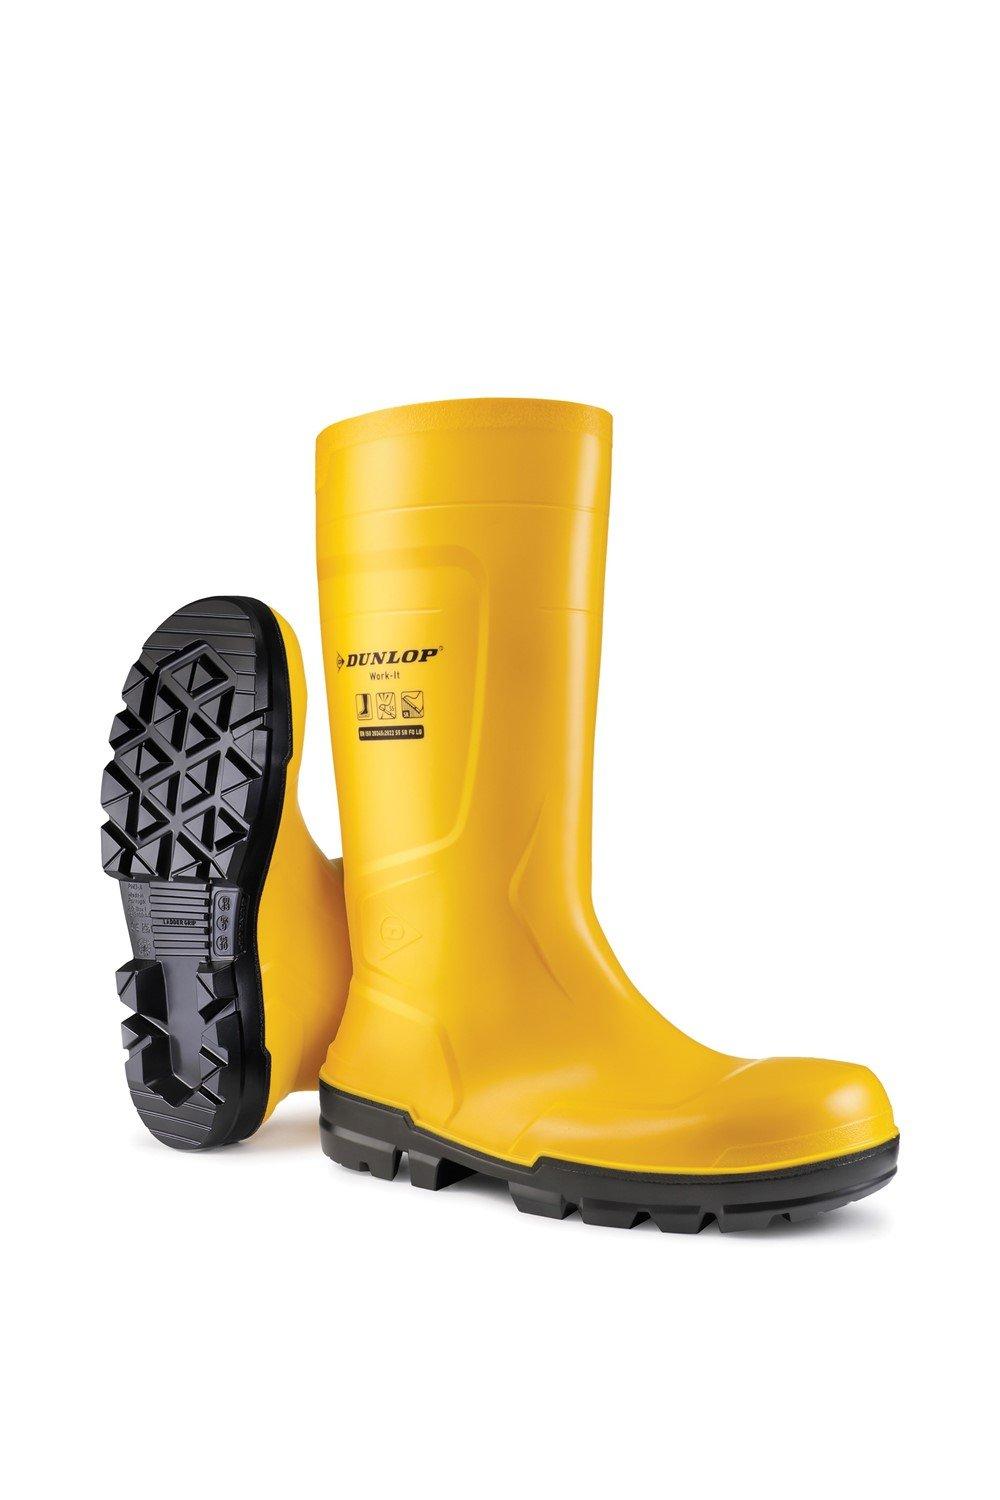 Защитные резиновые сапоги Work-It Full Safety Dunlop, желтый